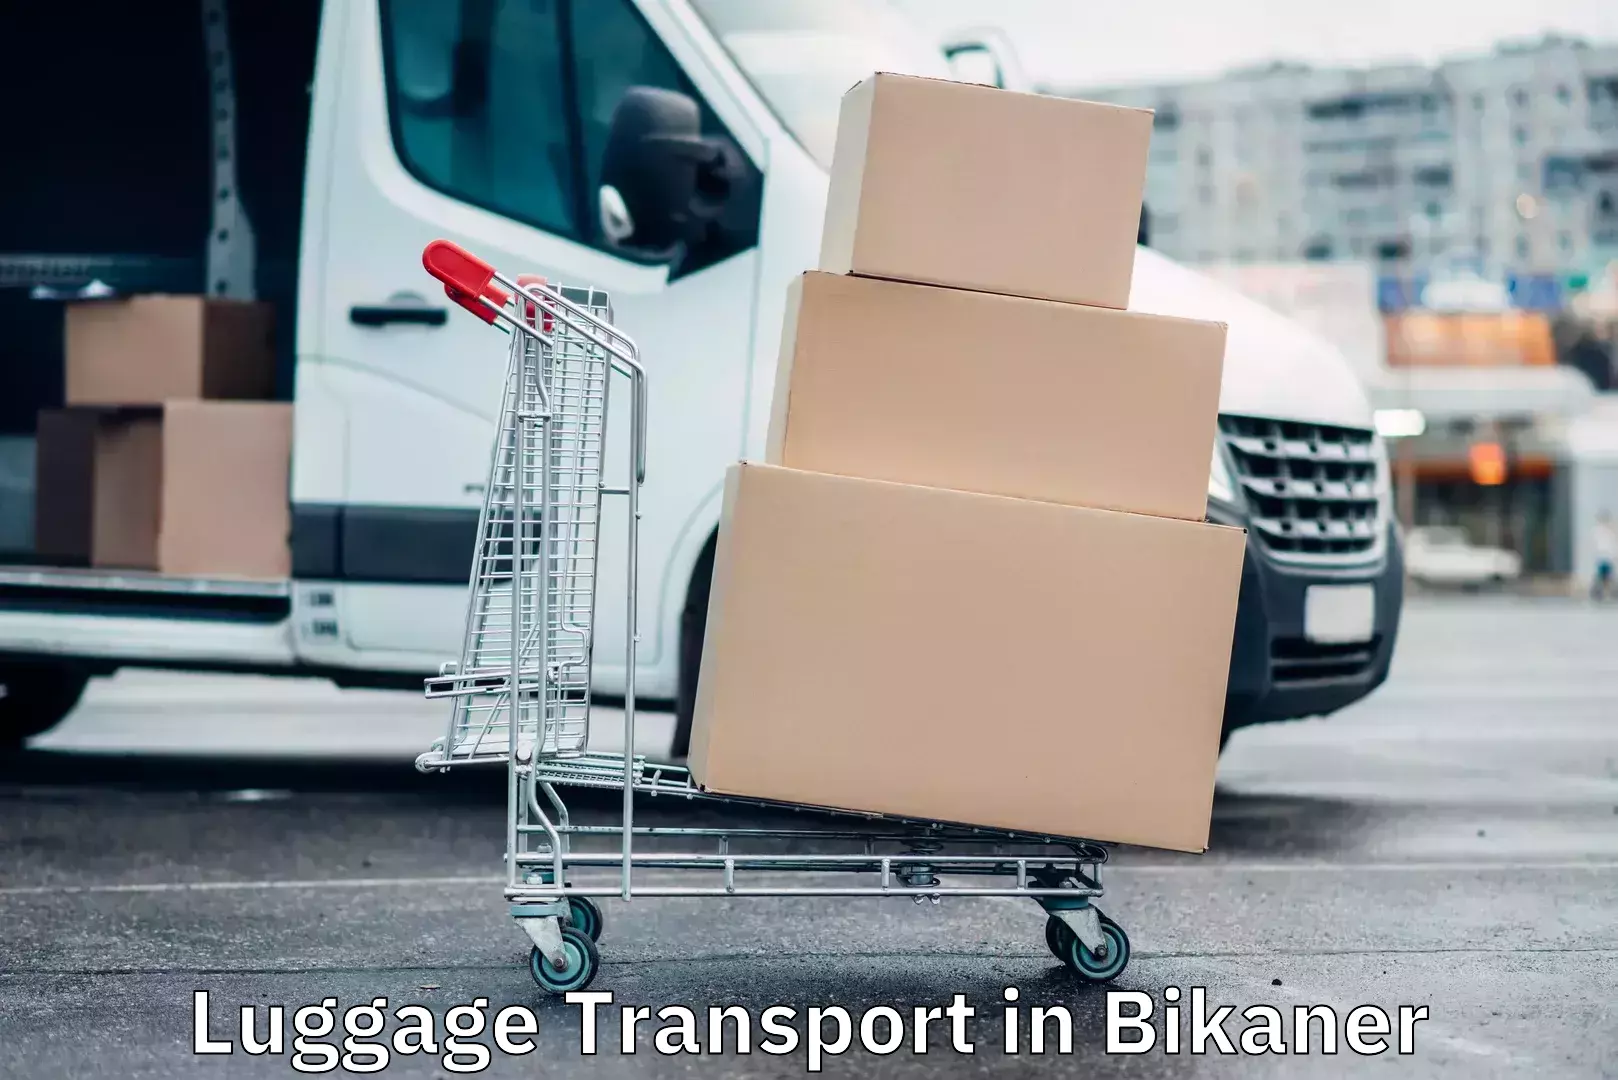 Luggage transit service in Bikaner